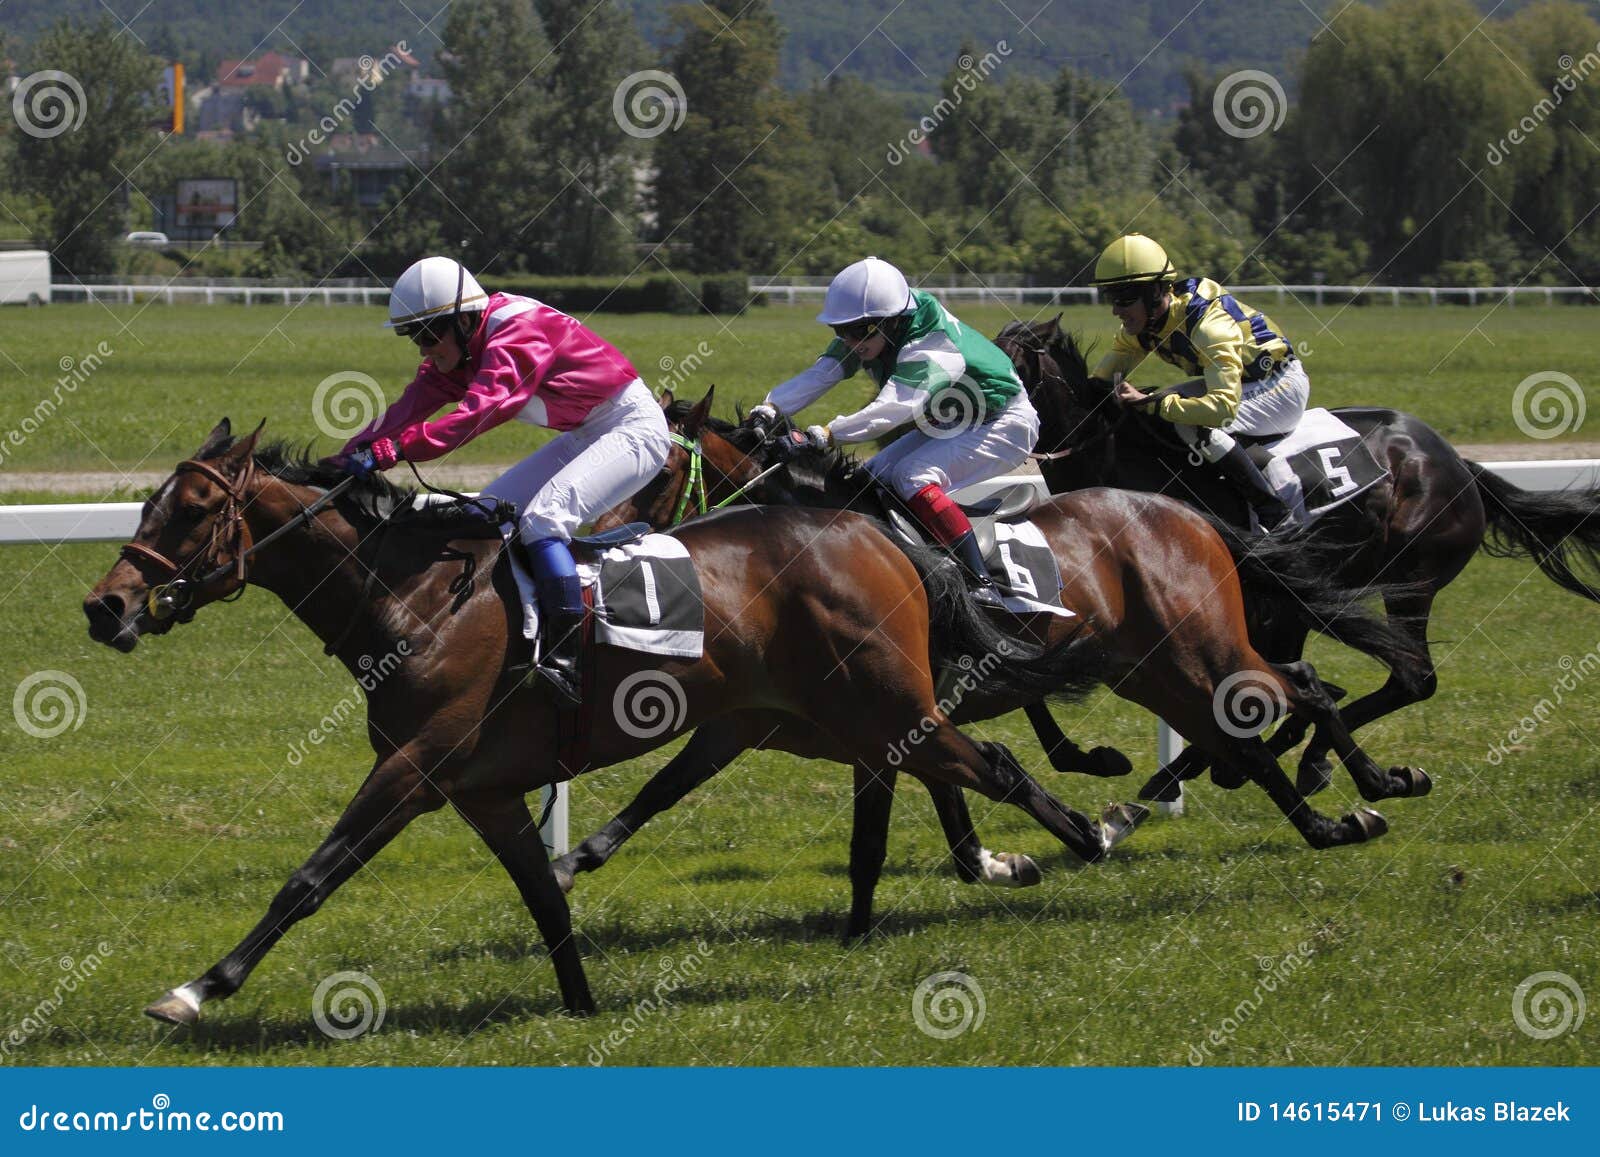 Horse Racing June Grand Prix in Prague Editorial Photo Image of